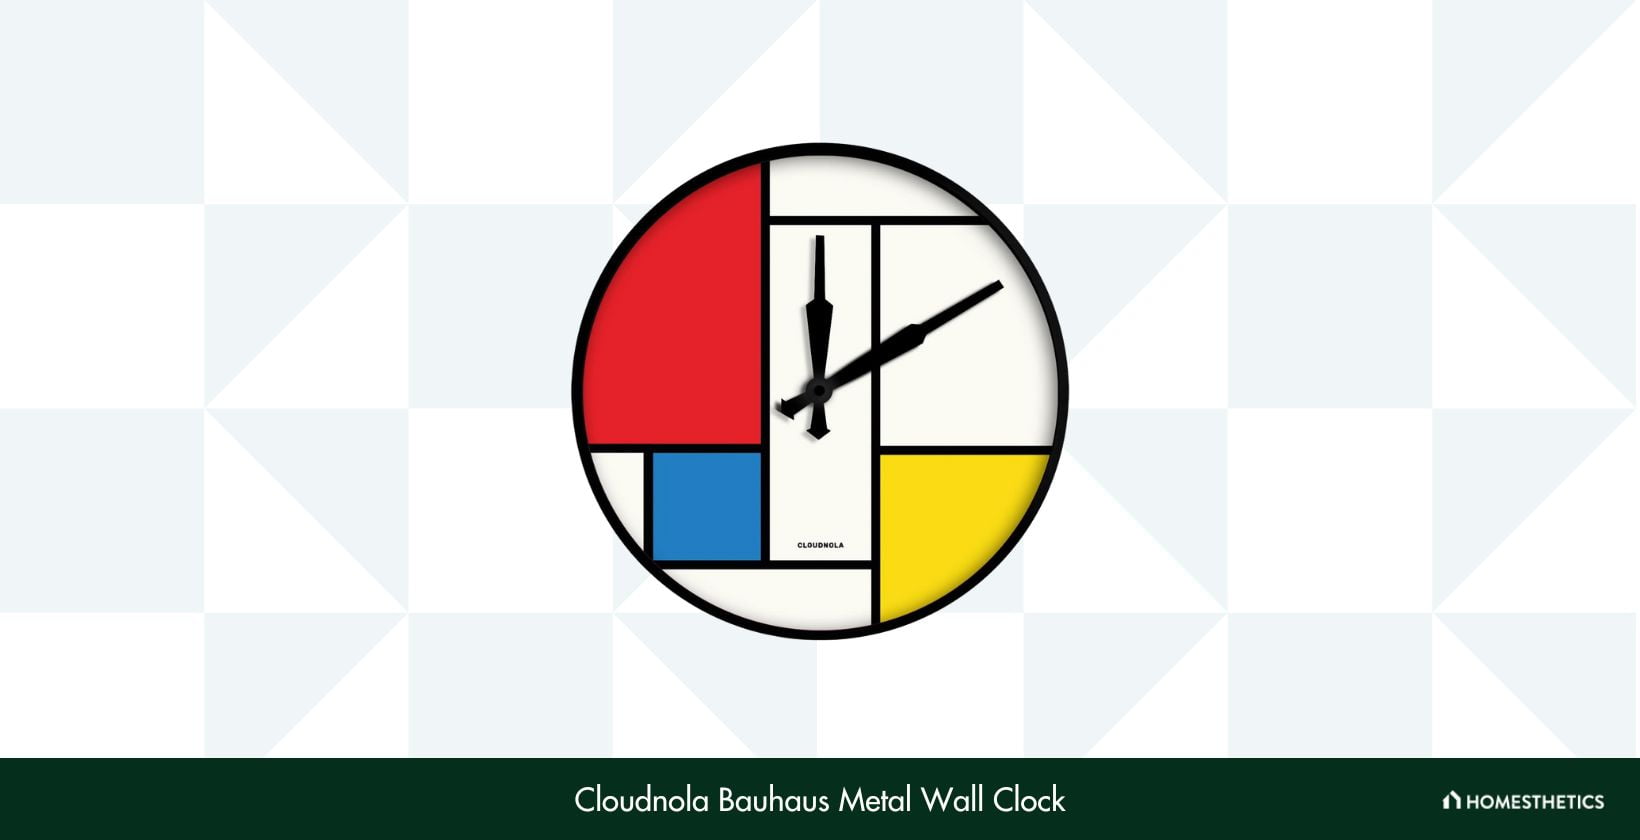 Cloudnola Bauhaus Metal Wall Clock